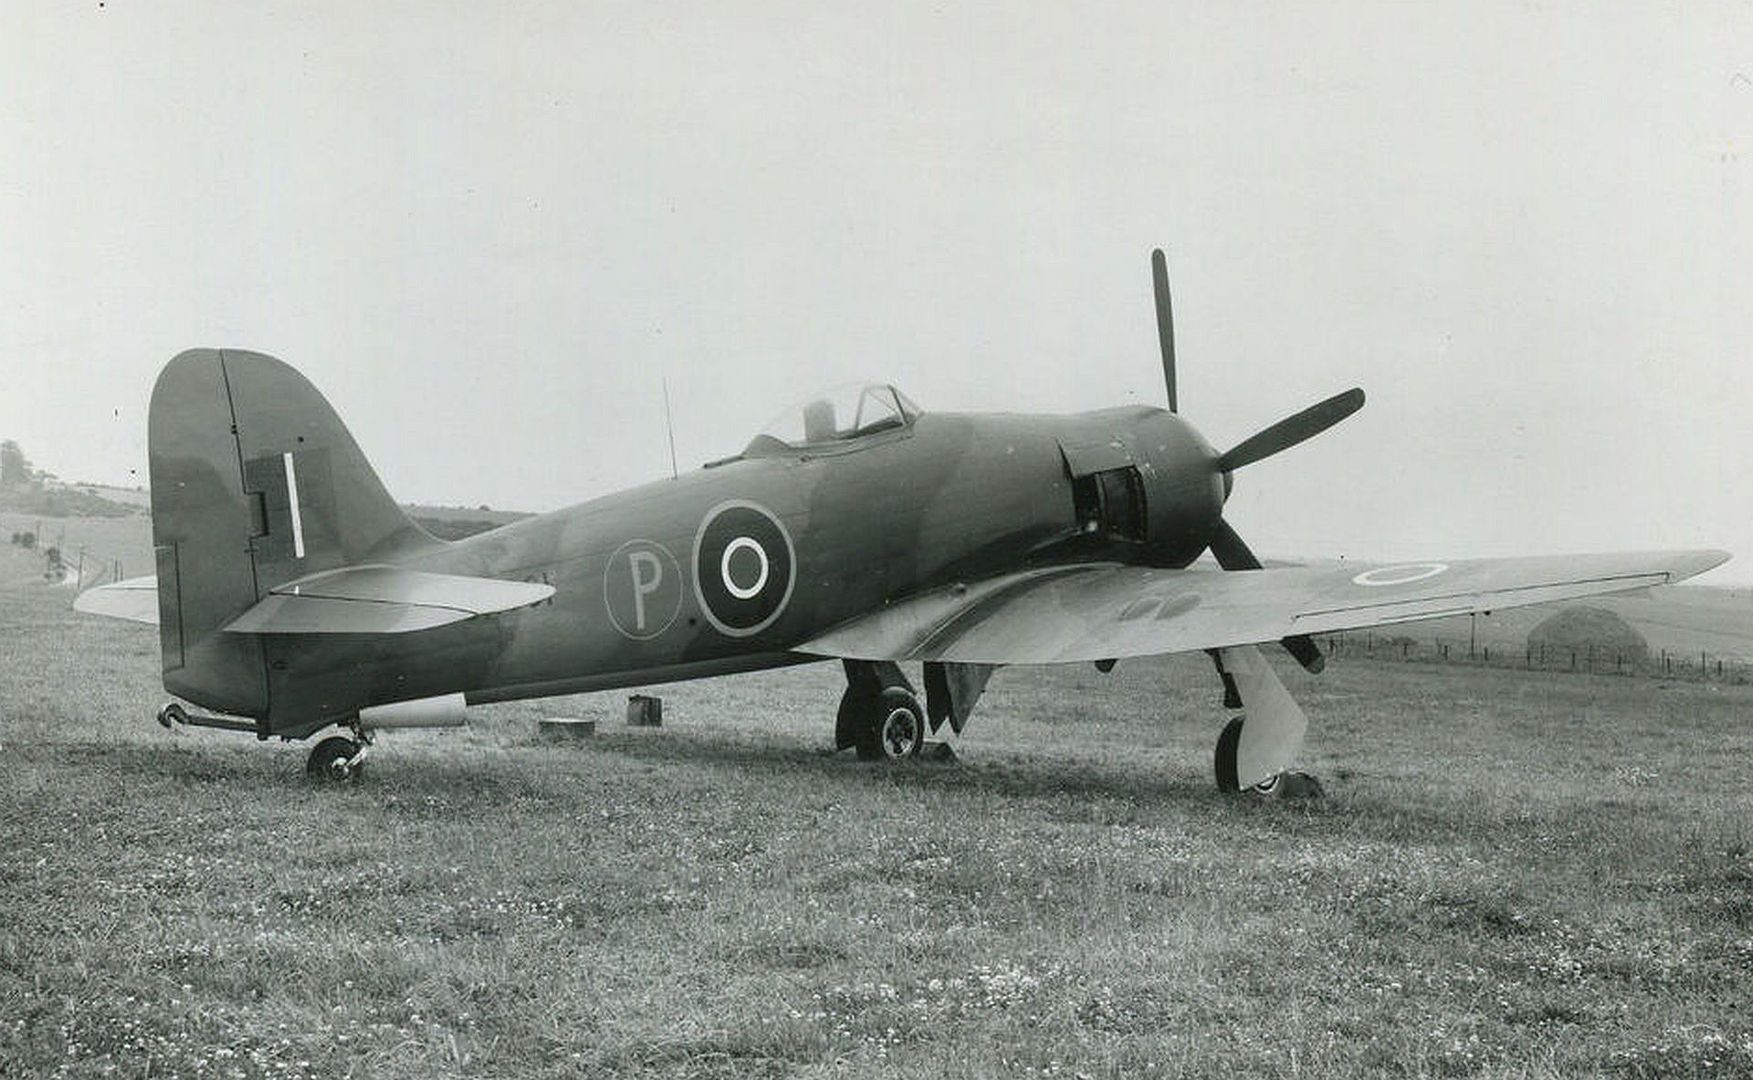 Hawker Sea Fury SR661 Prototype